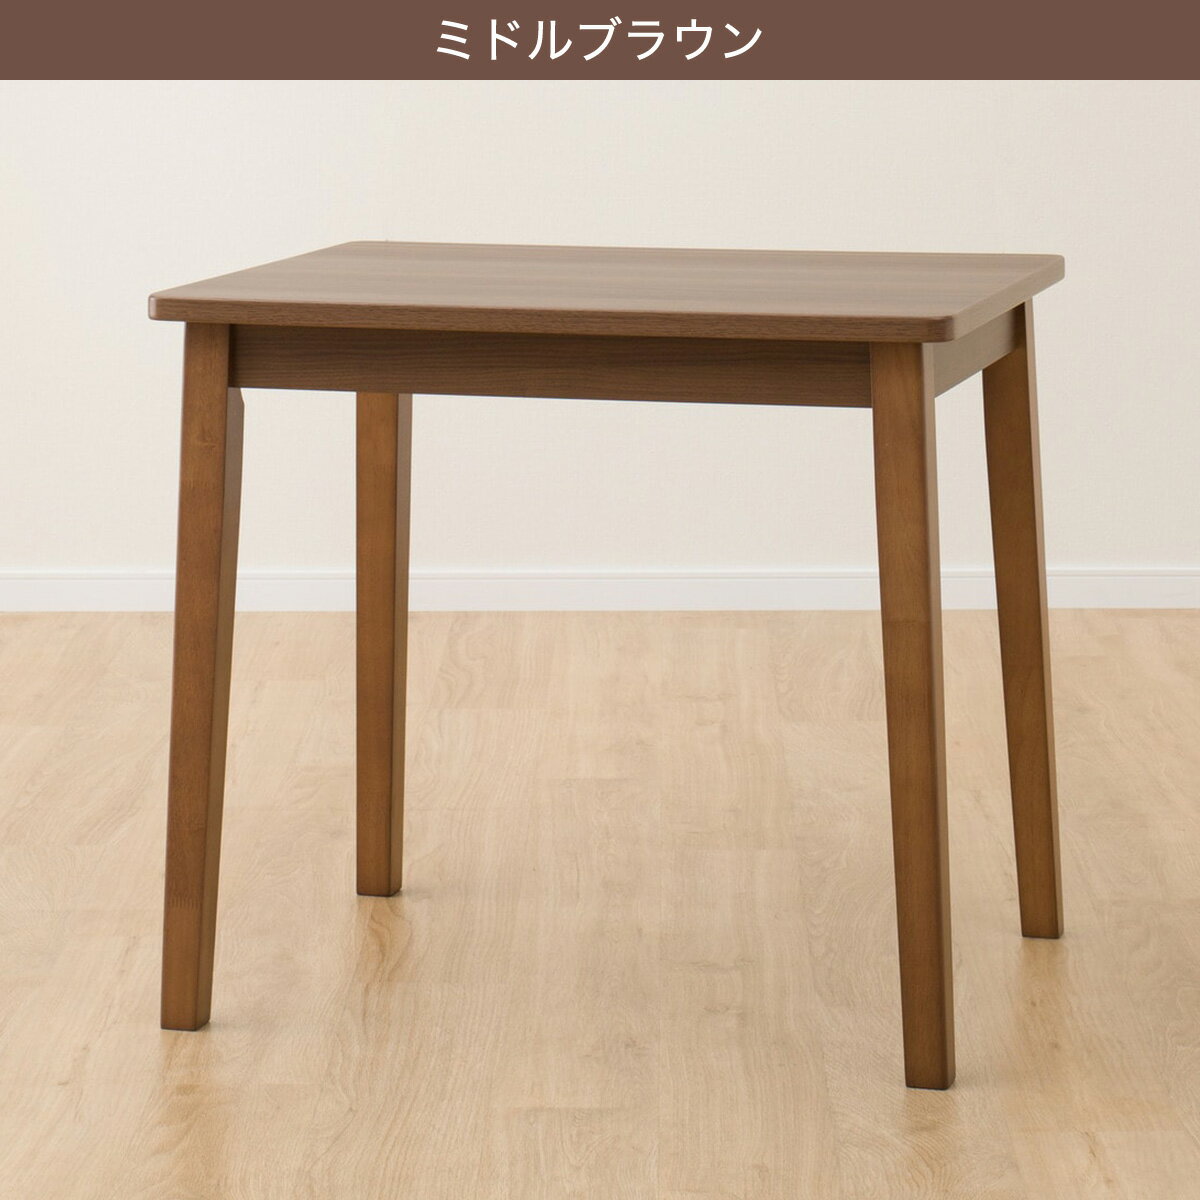 【北海道・東日本専用商品】[幅78cm] ダイニングテーブル(4LEG SI01 G 7860)   【5年保証】